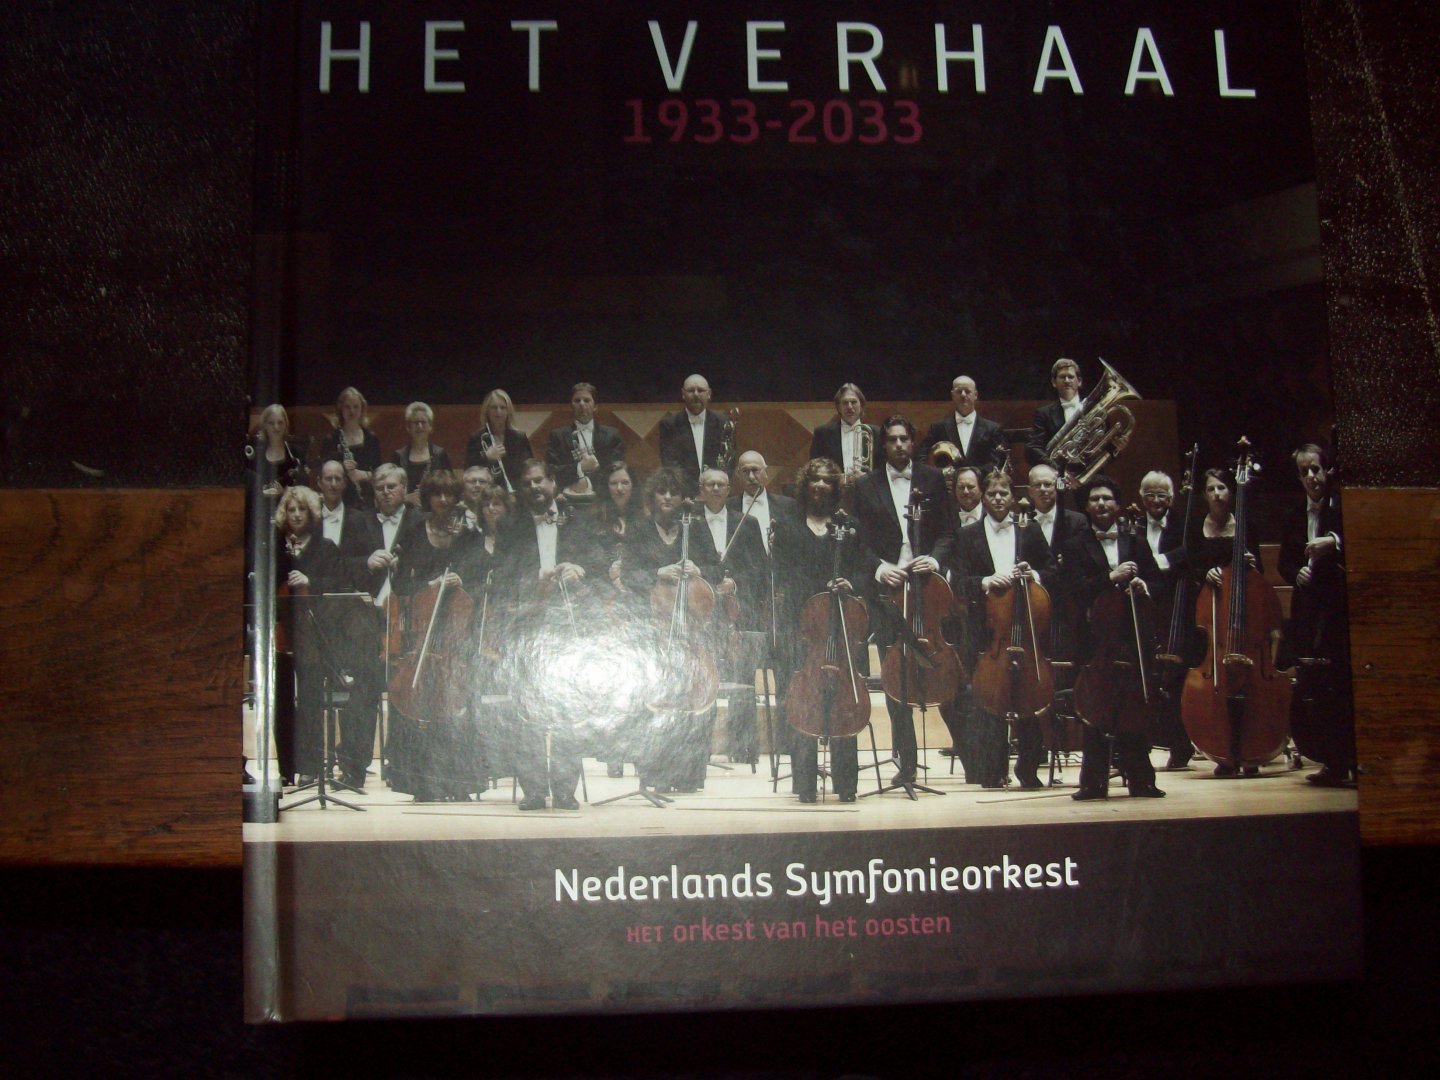 Paul Abels - "Het Verhaal 1933 - 2033"  Twintig jaar geschiedenis - Twintig jaar toekomst Nederlands Symfonie Orkest. - Het Orkest van het Oosten.